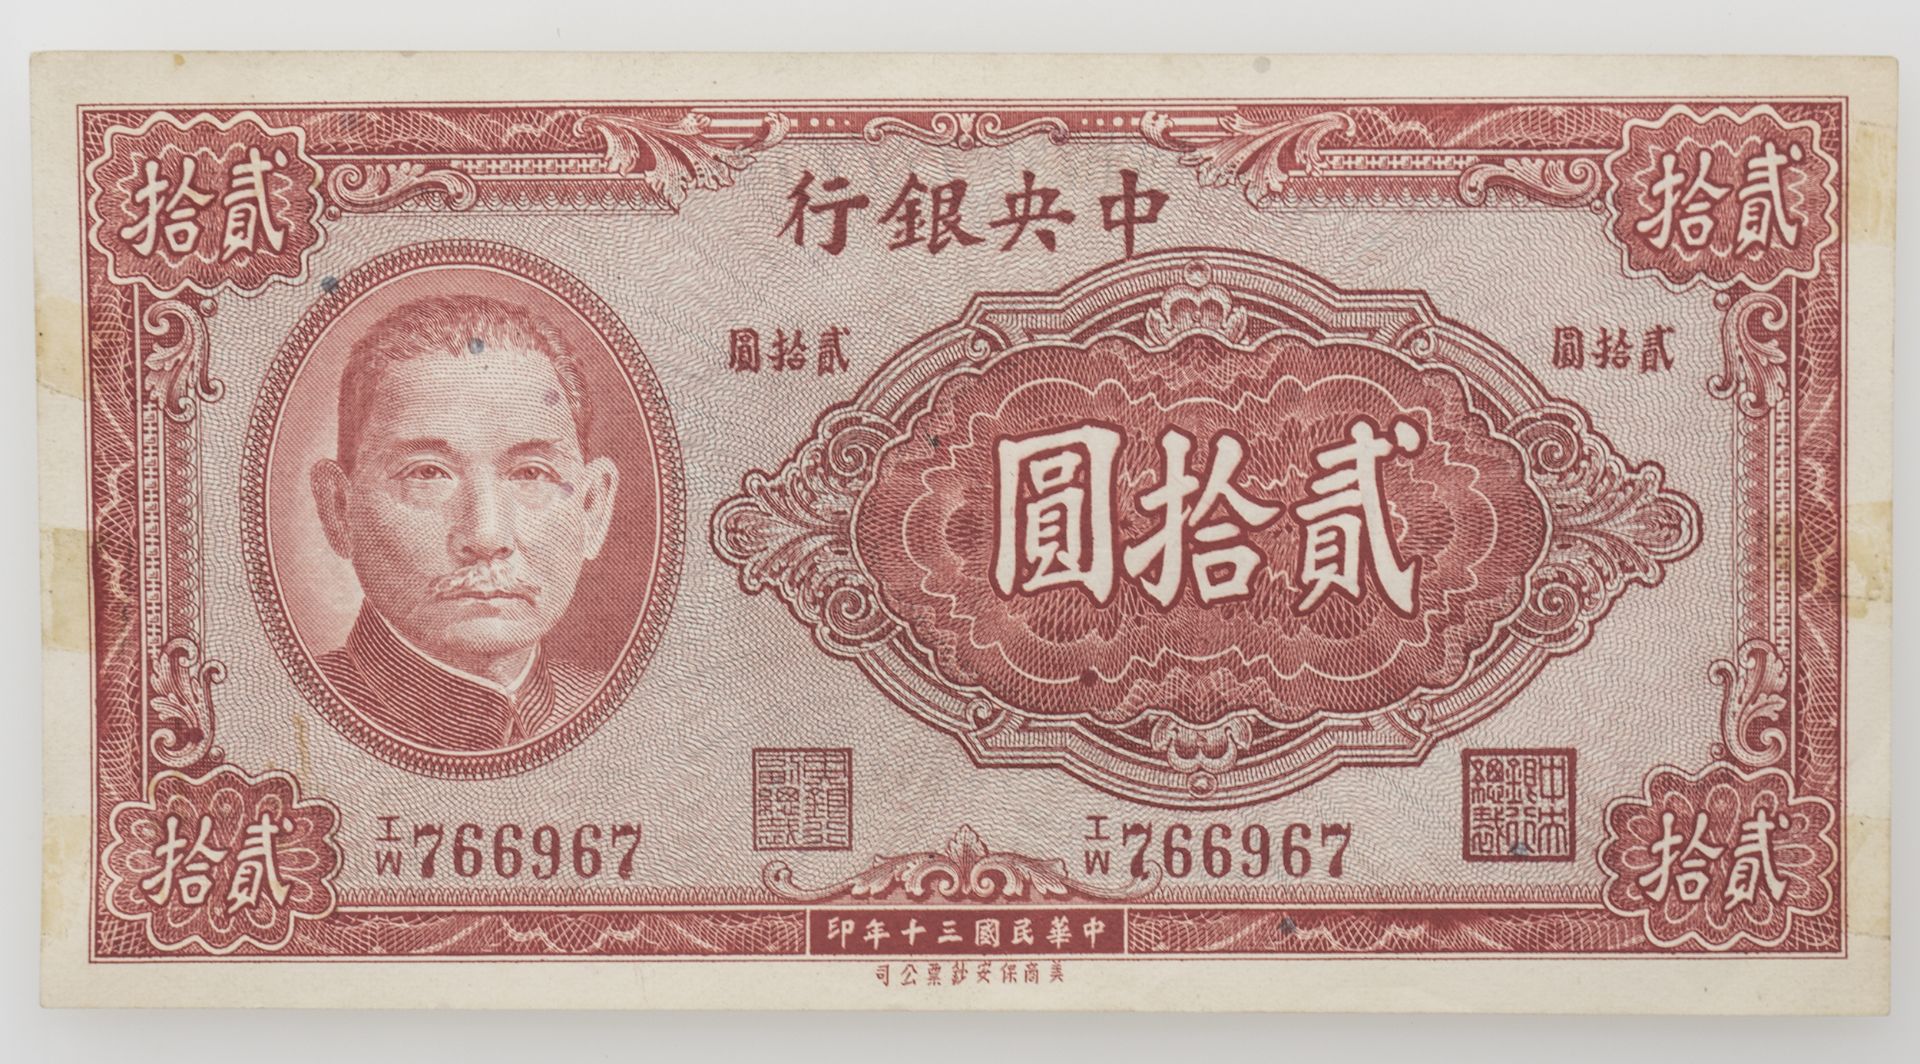 China 1941, 20 Yuan - Banknote, Abbildung von Sun Yat Sen, 1. Präsident der Republik China.